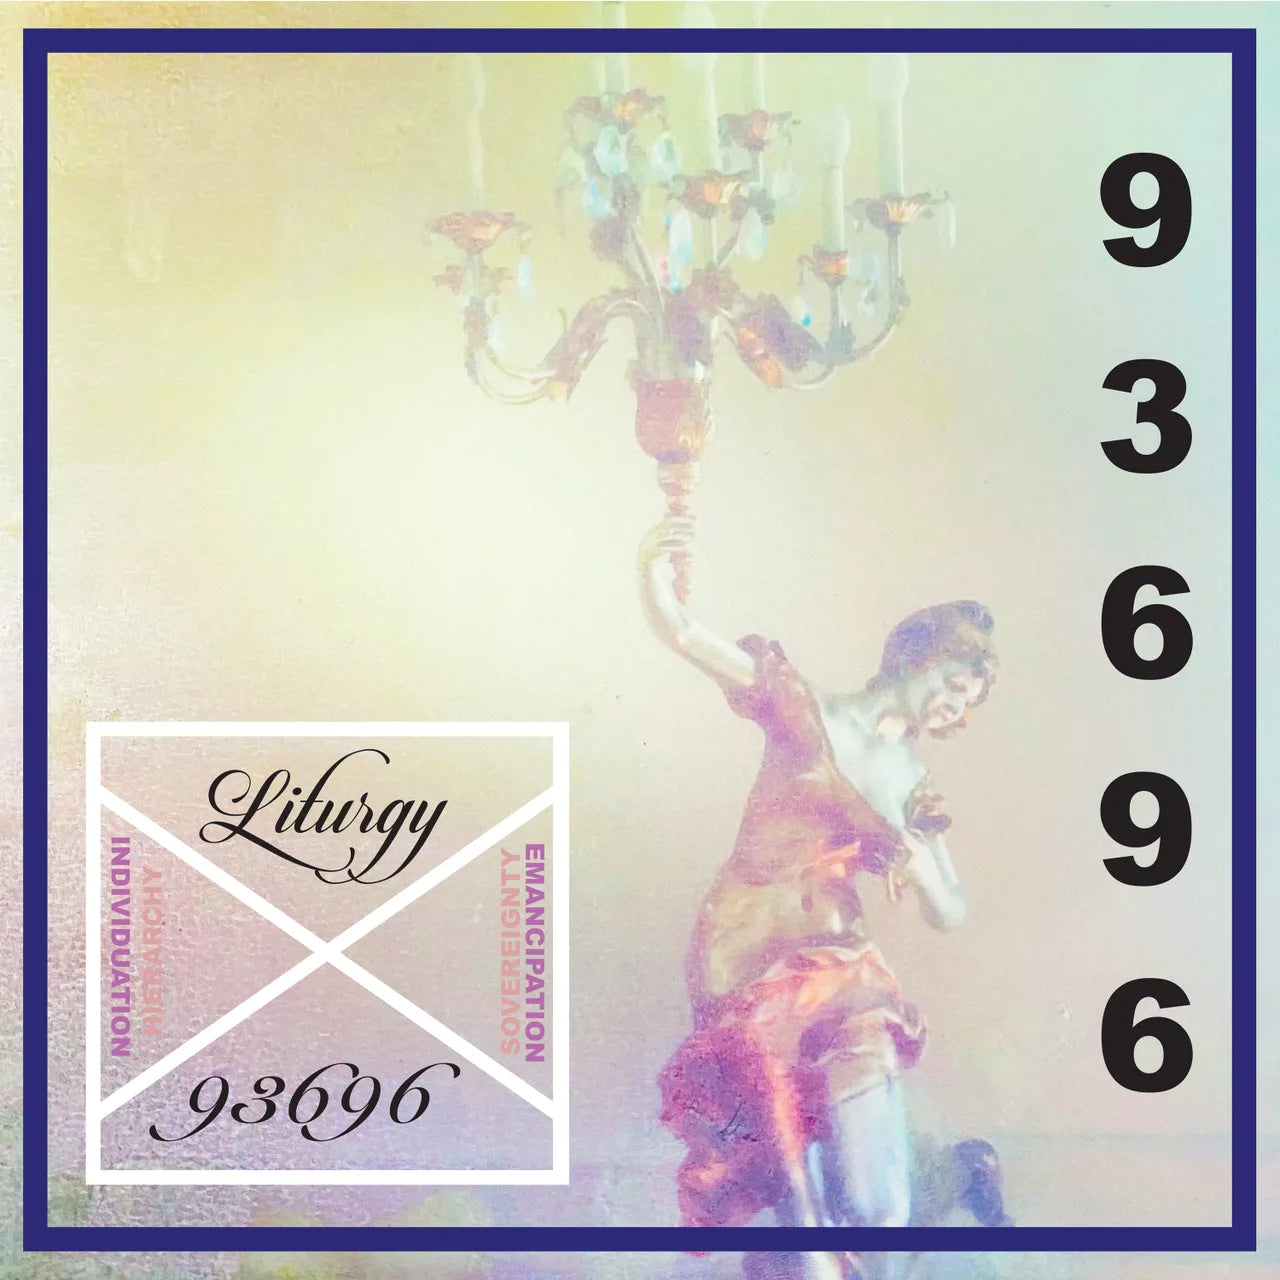 Liturgy ‎– 93696